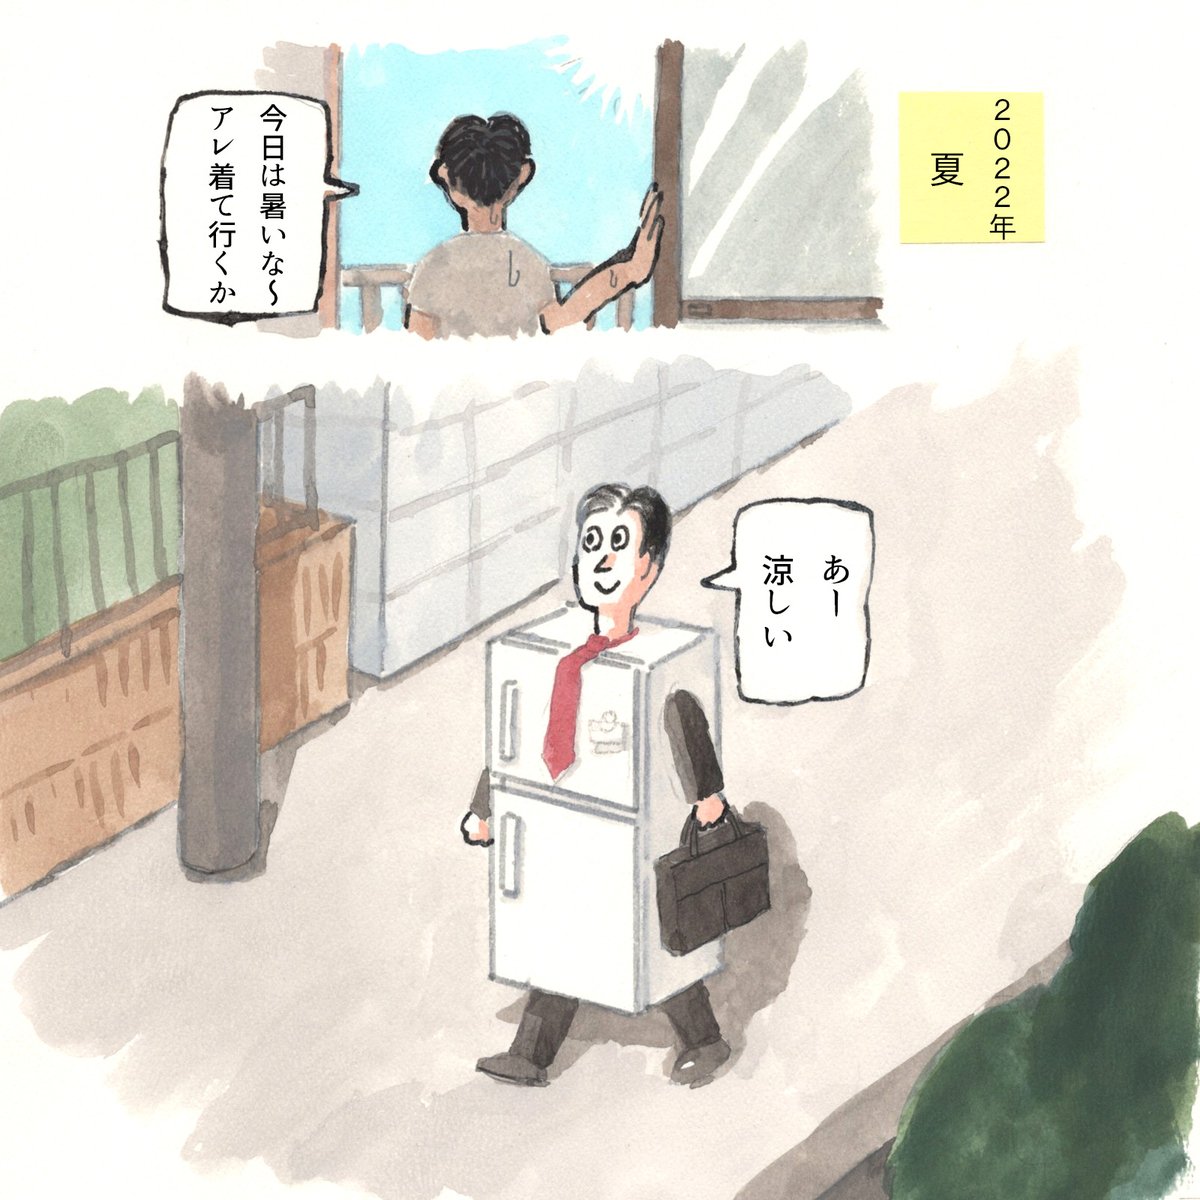 大阪ステーションシティのwebメディア「do-ya?」にて冷やし中華の漫画を描かせていただきました。是非ご覧ください。バッド・アニマルズも登場!https://t.co/aSAuLrHfFC 